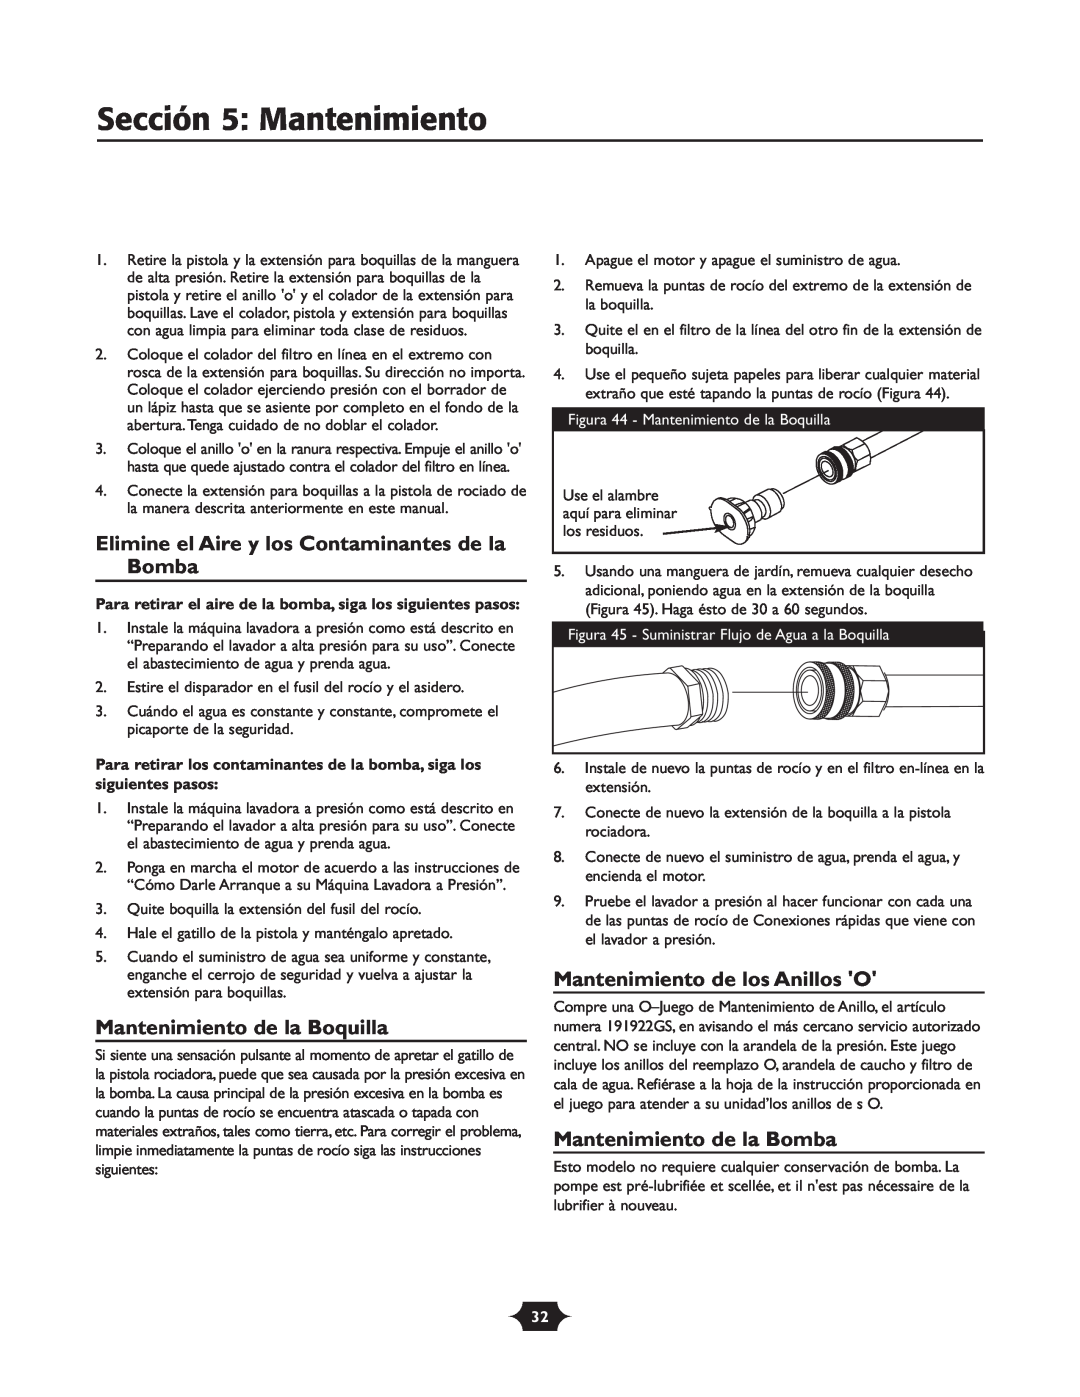 Briggs & Stratton 20209 owner manual Sección 5 Mantenimiento, Elimine el Aire y los Contaminantes de la Bomba 